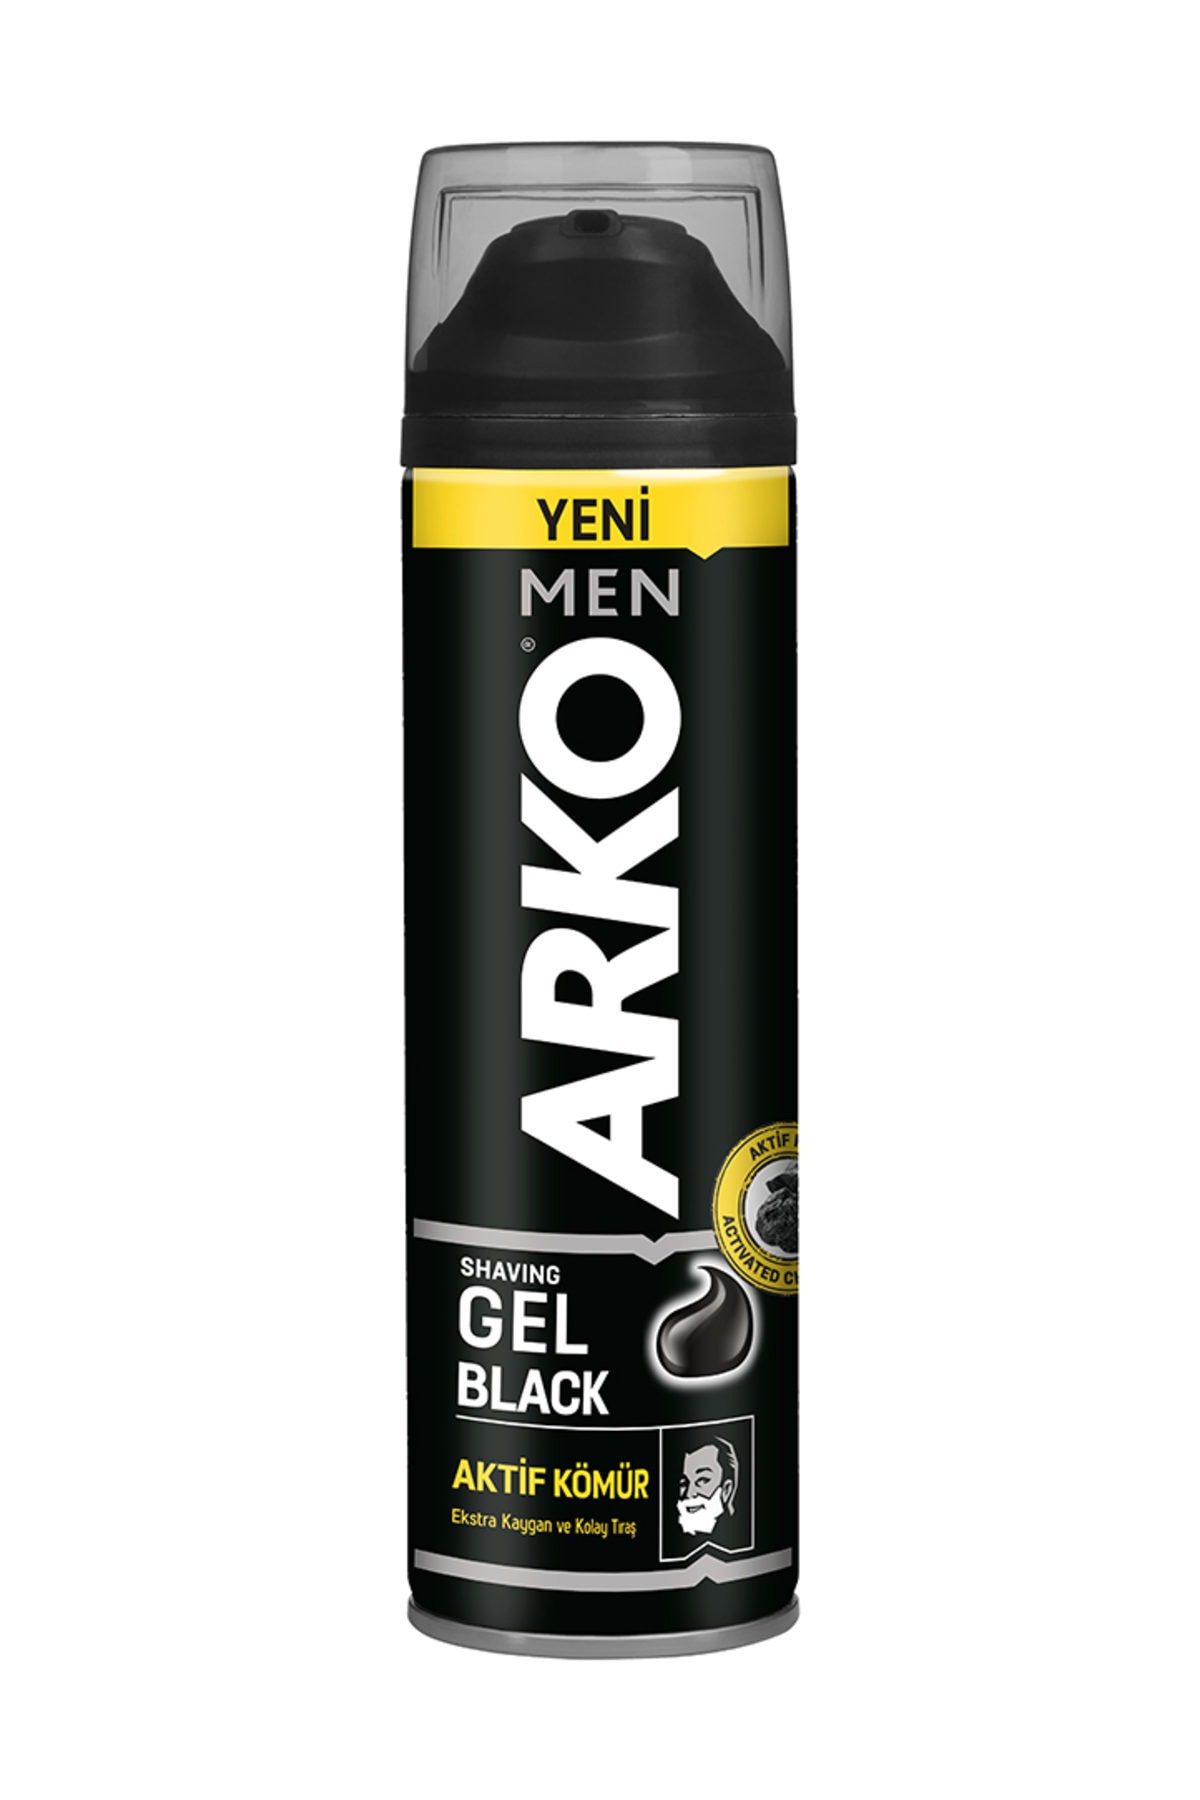 ARKO Men Black Serisi Jel 200 ml